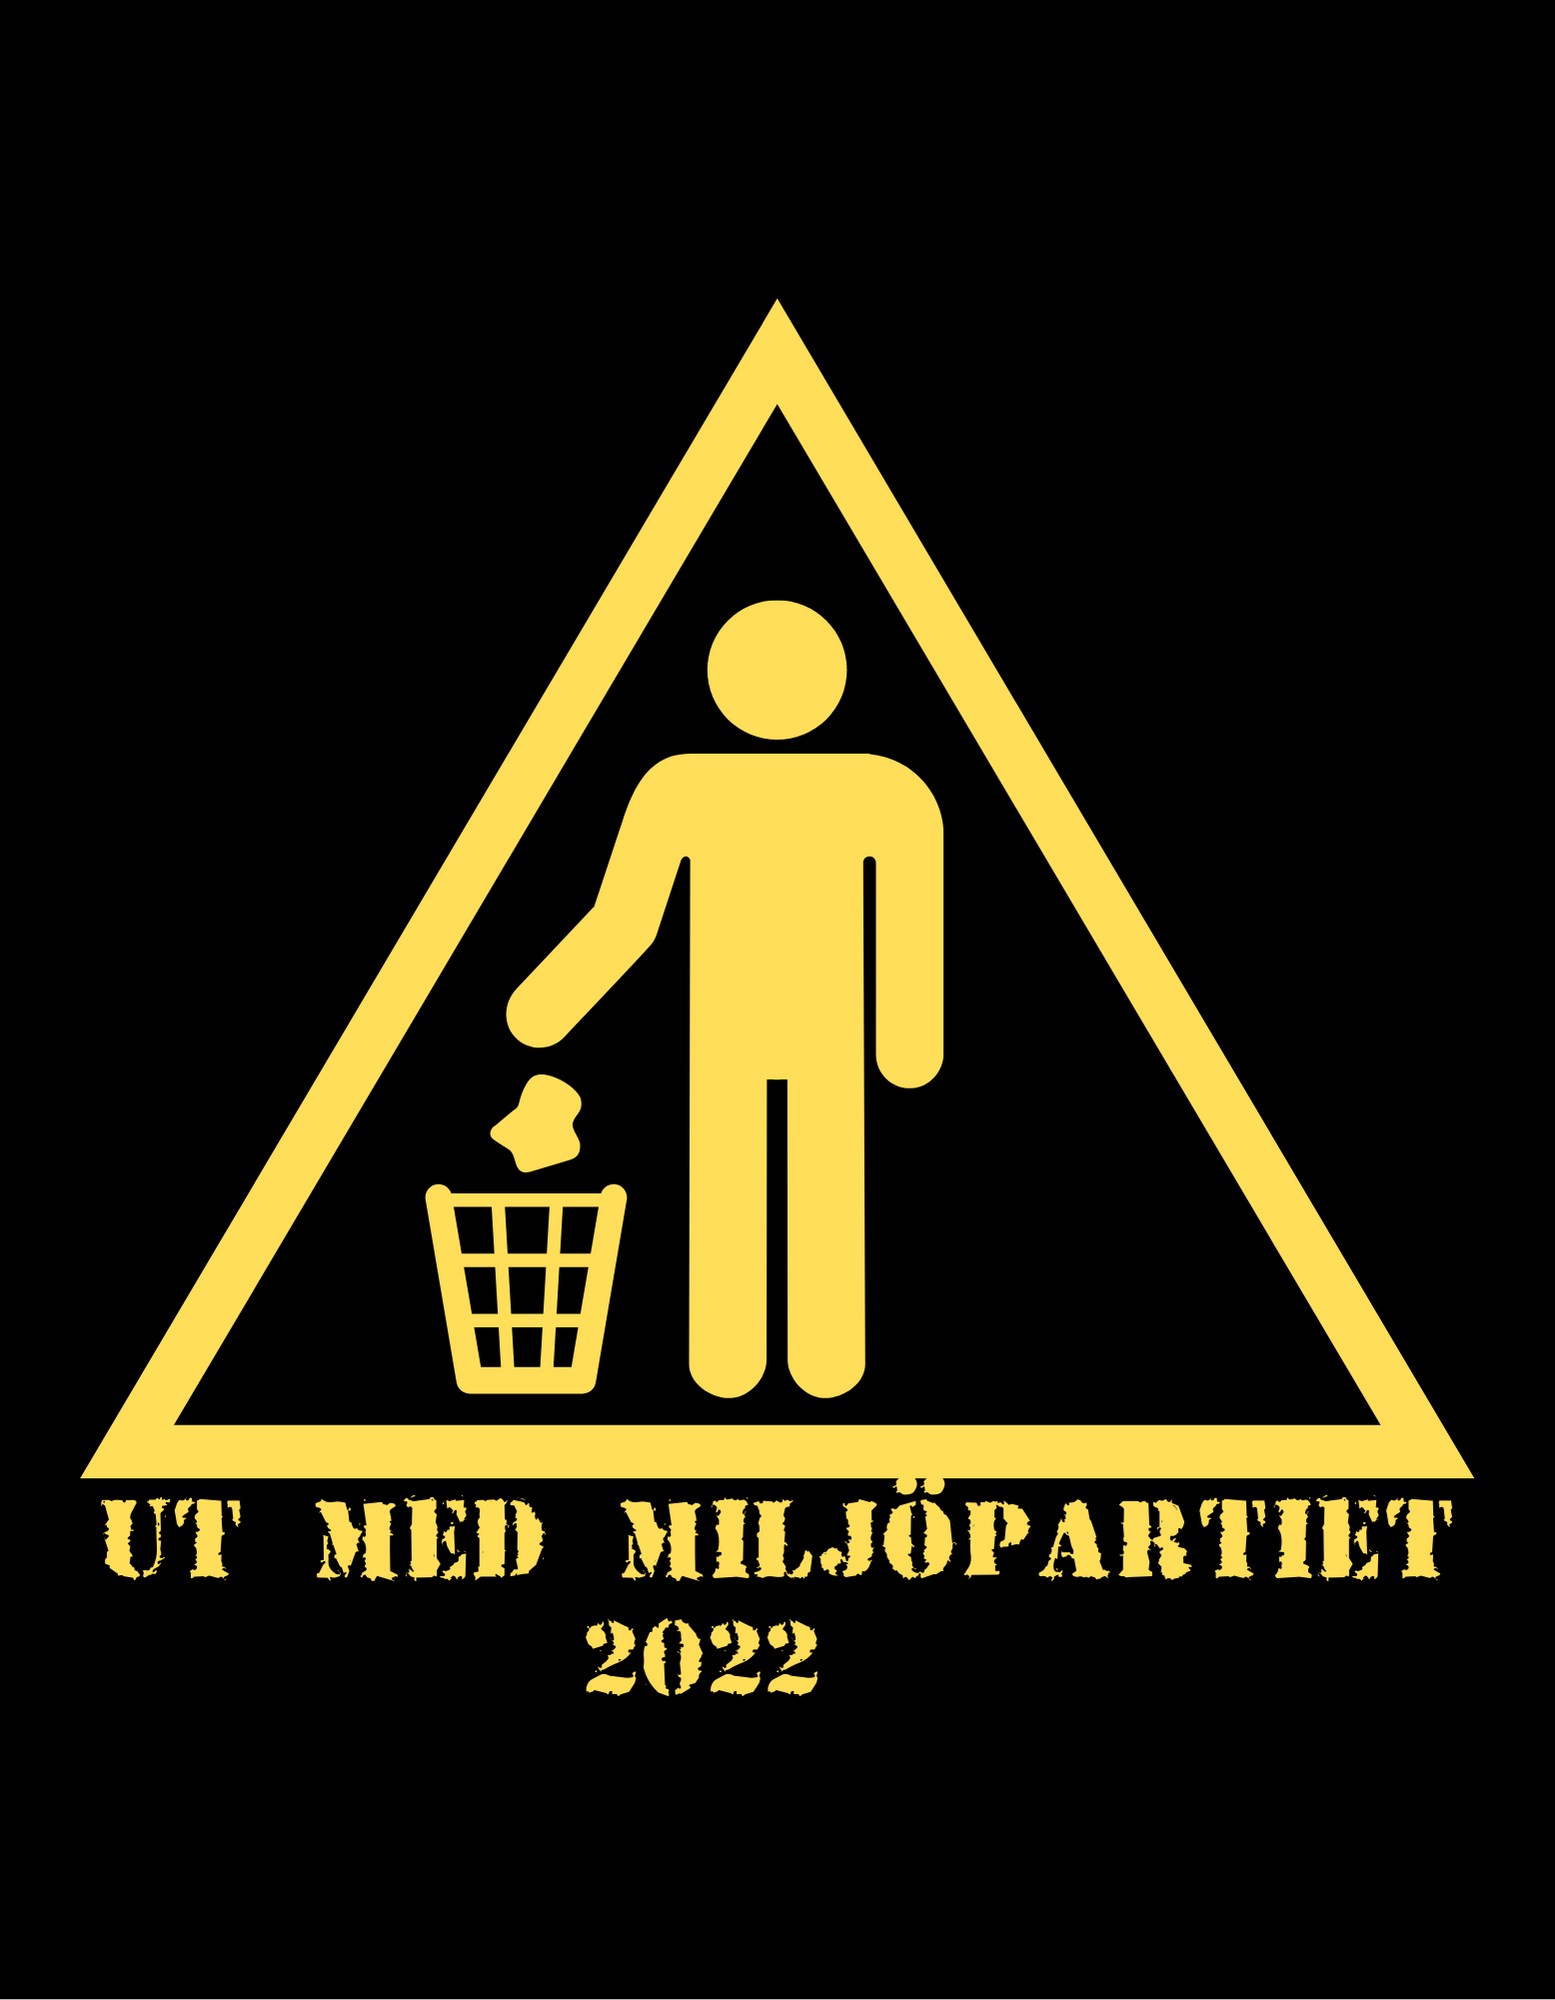 Ut med miljöpartiet 2022